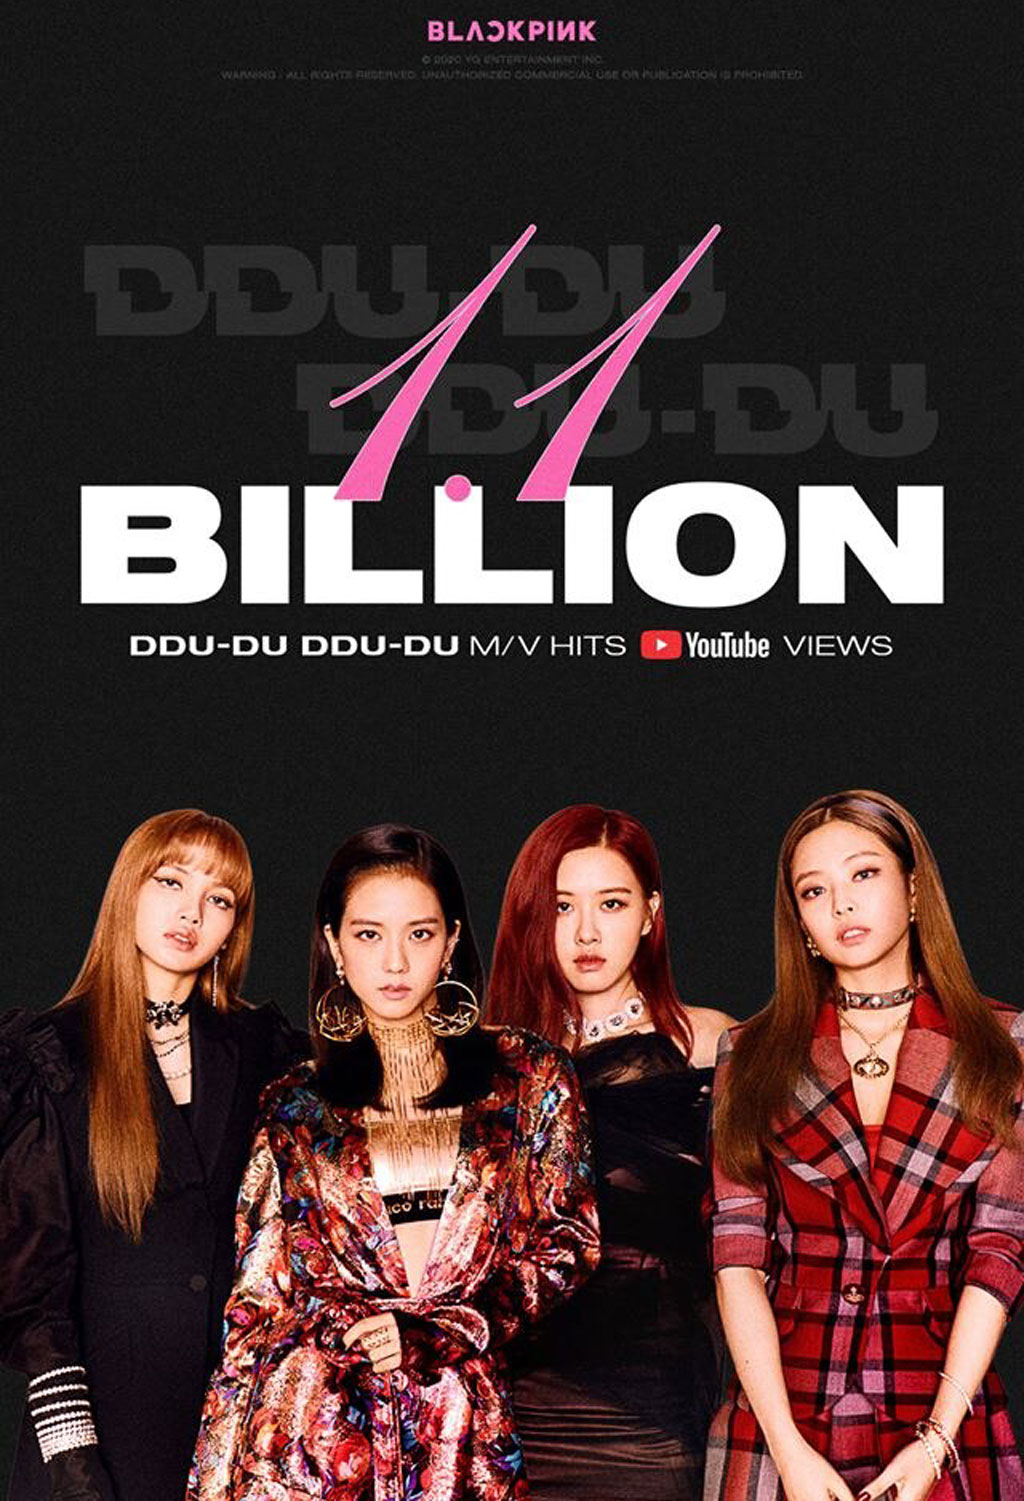 BlackPink là nhóm nhạc K-Pop đầu tiên có MV đạt 1,1 tỉ lượt xem với MV “DDU-DU DDU-DU”1